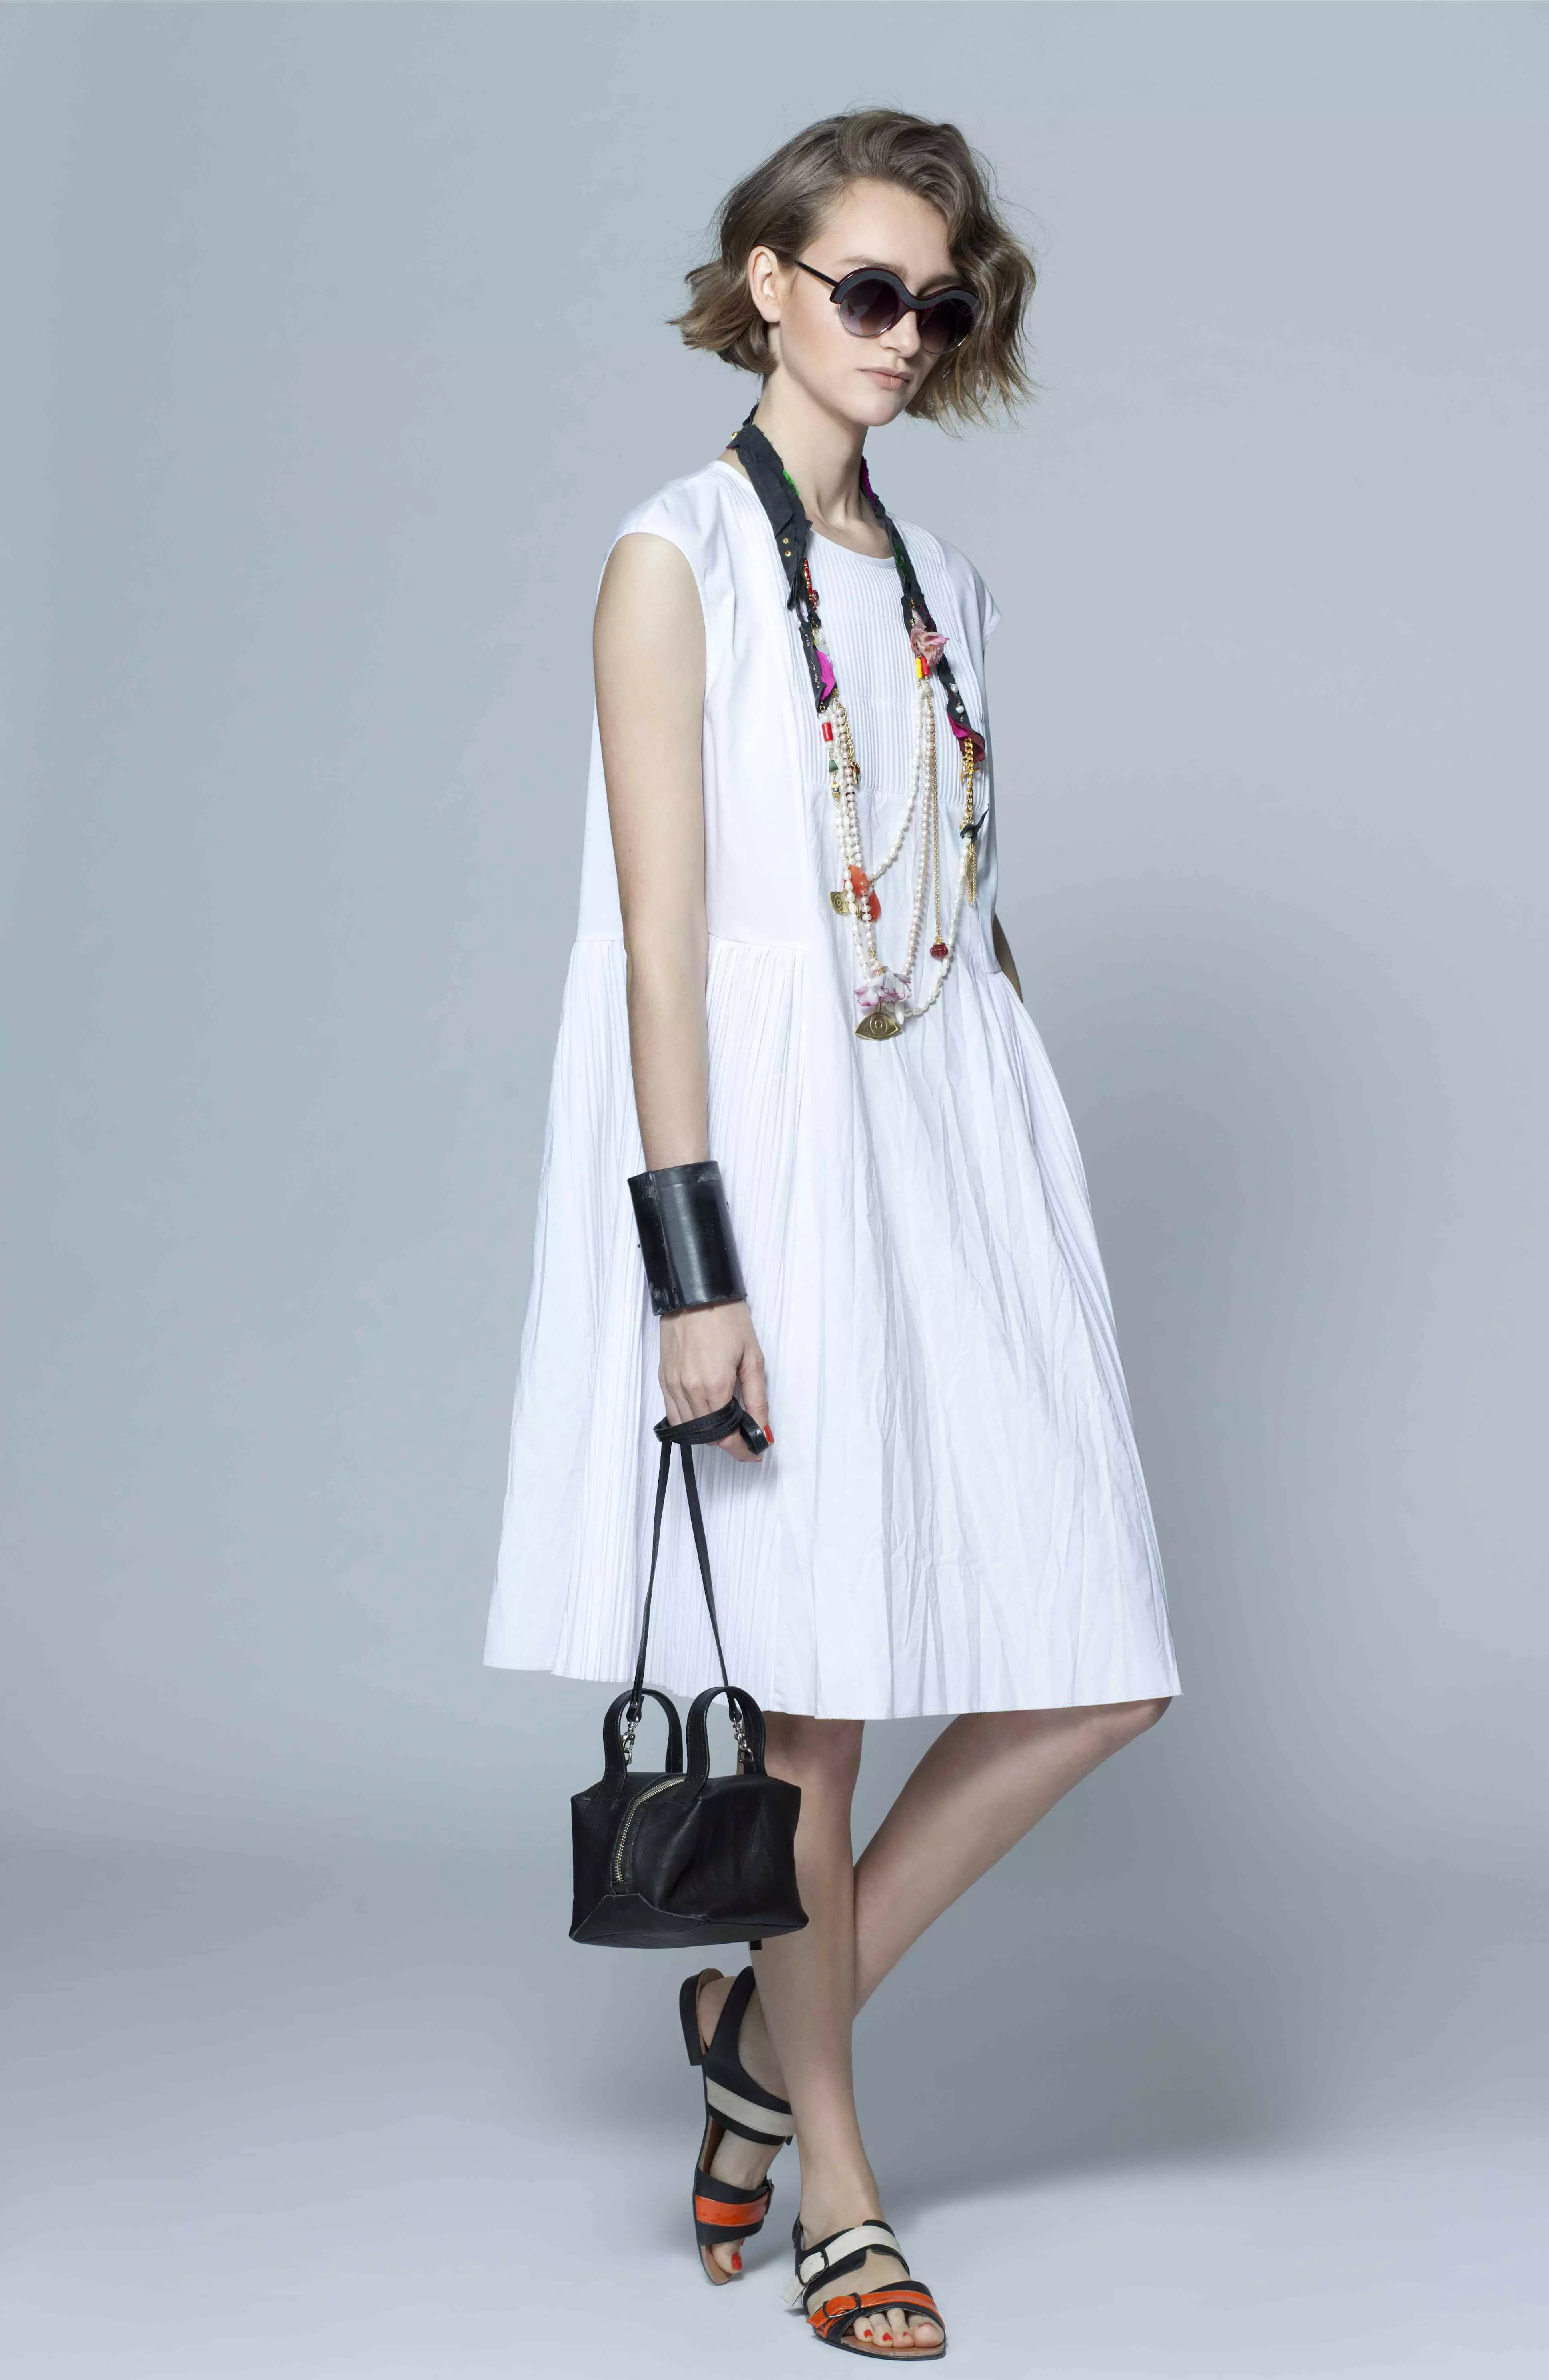 שמלת כותנה לבנה בגזרת A של רזילי, קיץ 2014. מחיר:950 שקלים (להשיג בחנויות הרשת)